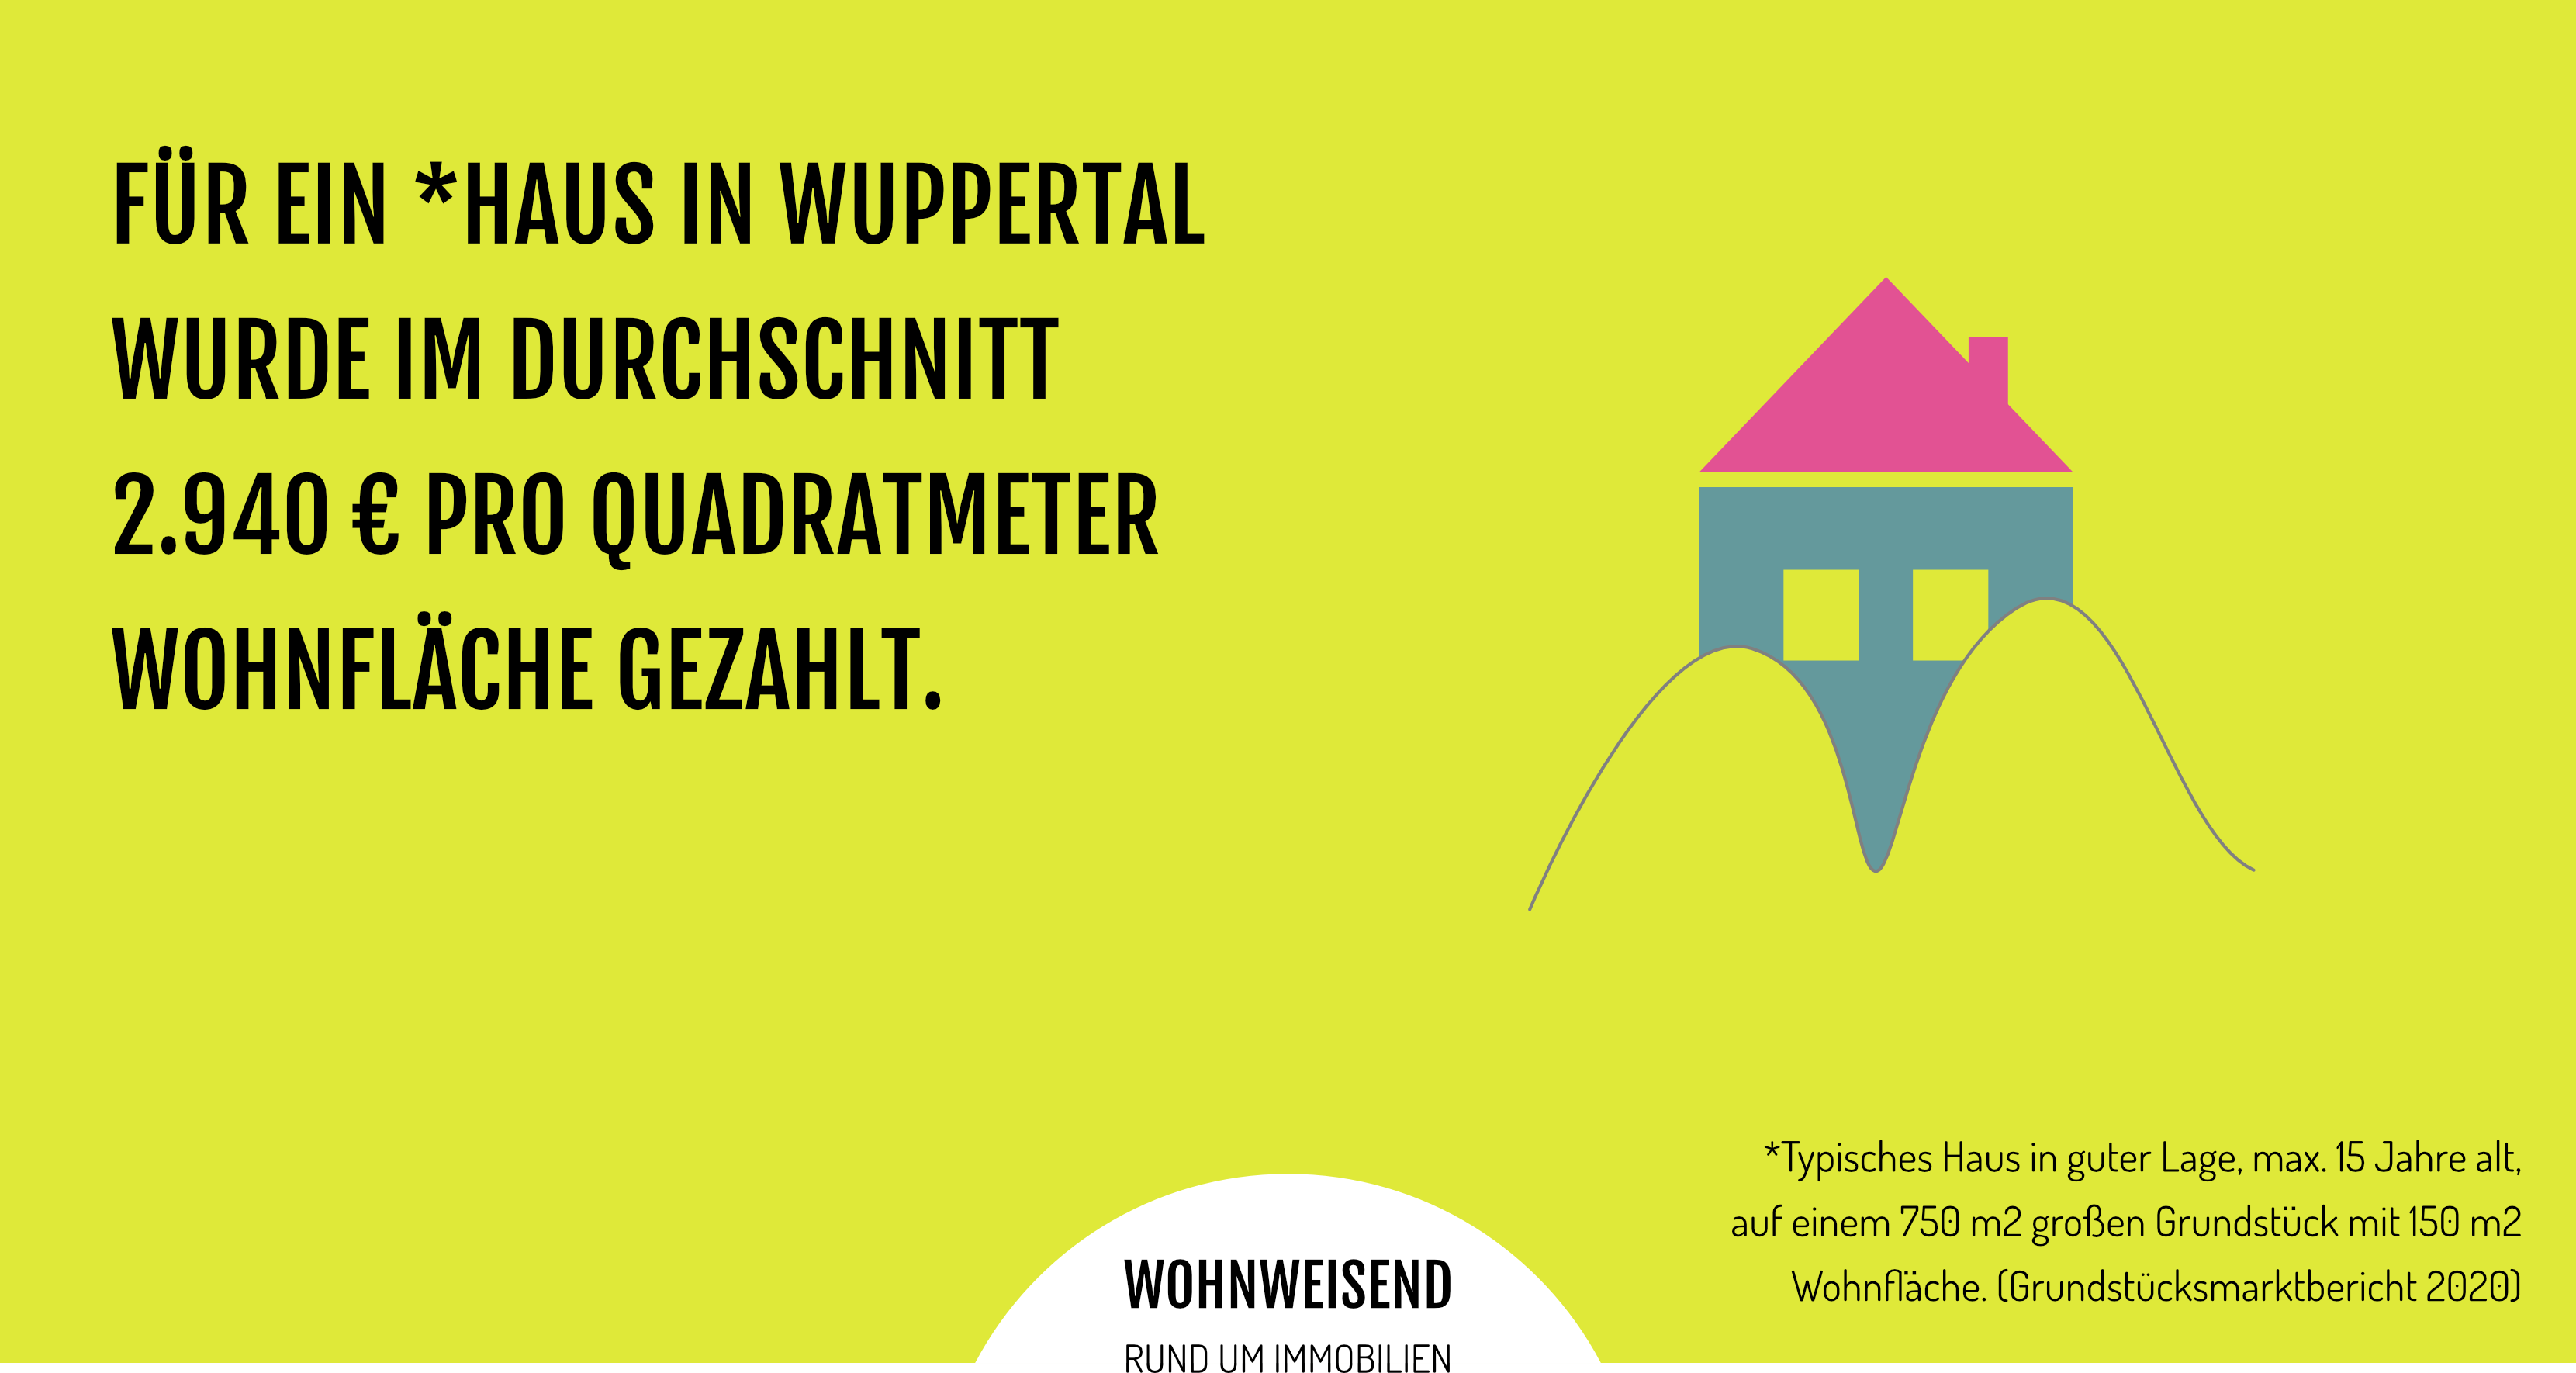 Info zu dem Quadratmeterpreis von Häusern in Wuppertal - Wohnweisend Informiert über Bewertung